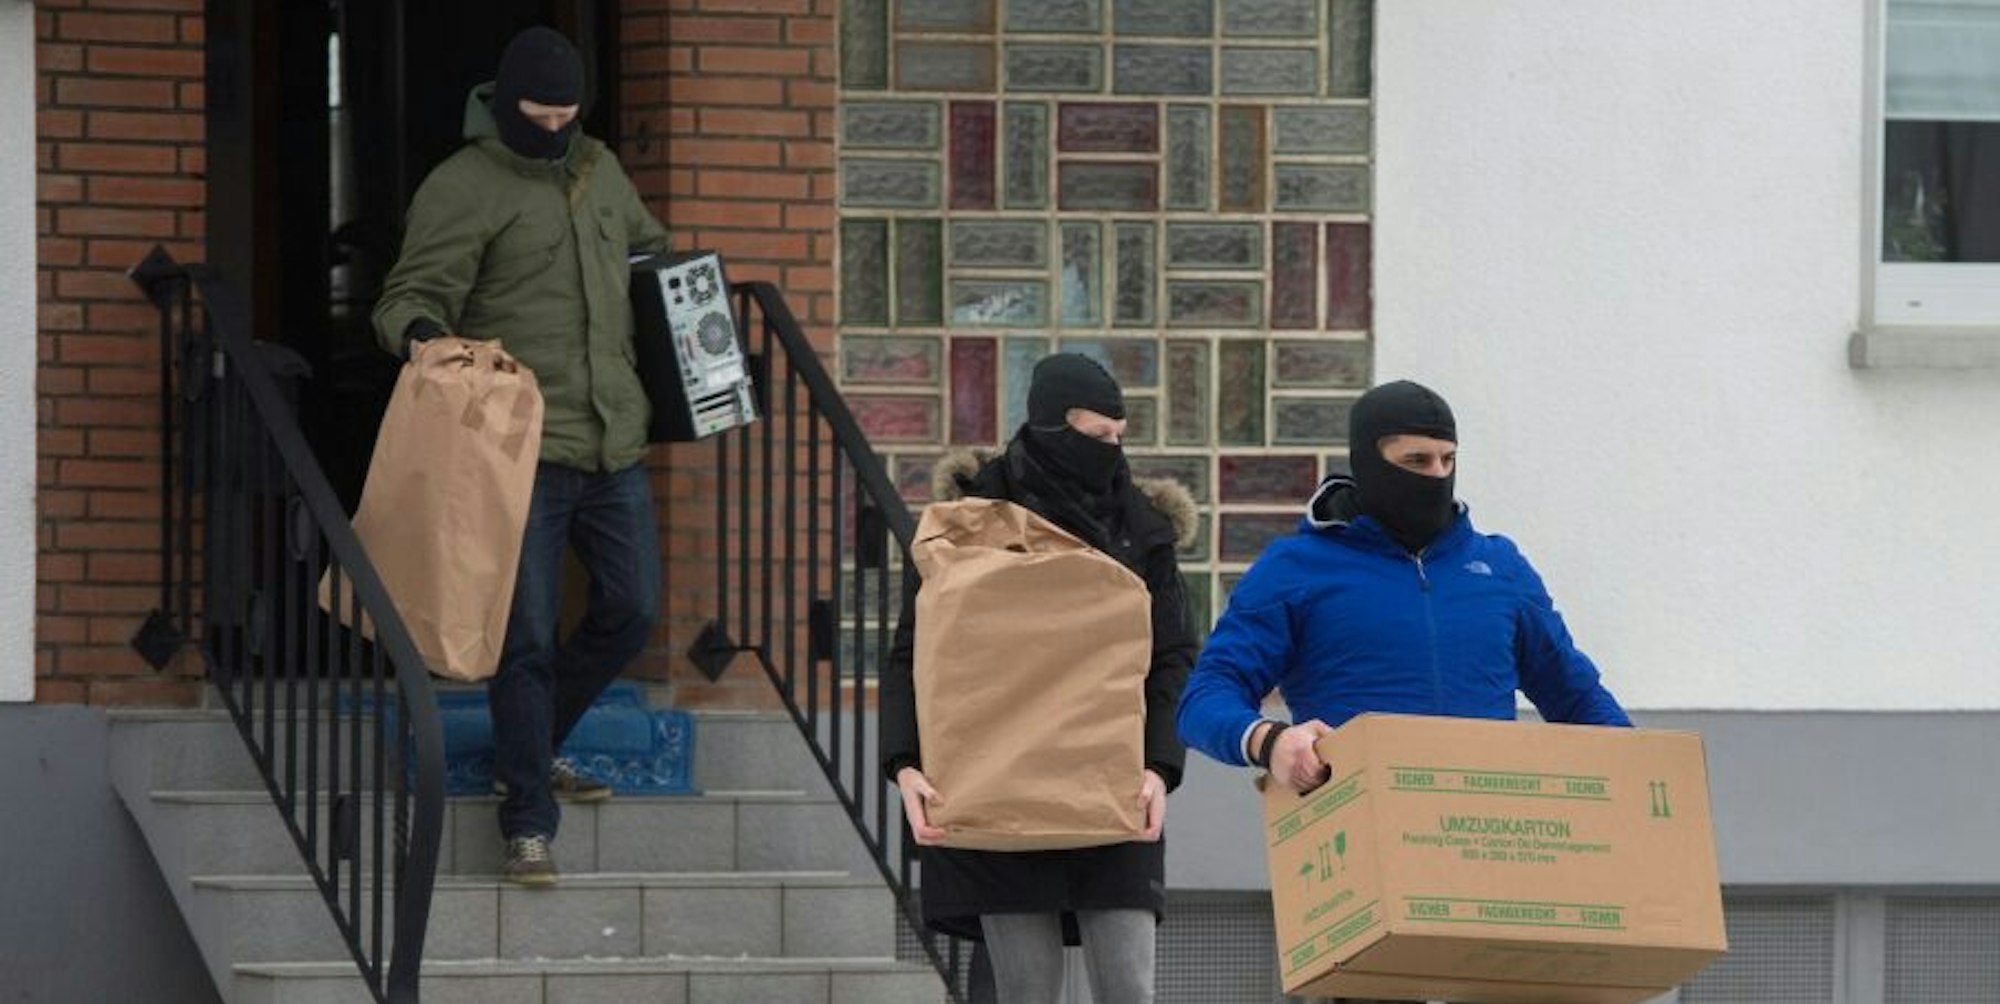 Ein Spezialeinsatzkommando trug kistenweise Material aus dem Haus, in dem die Terror-Bürger gelebt haben.